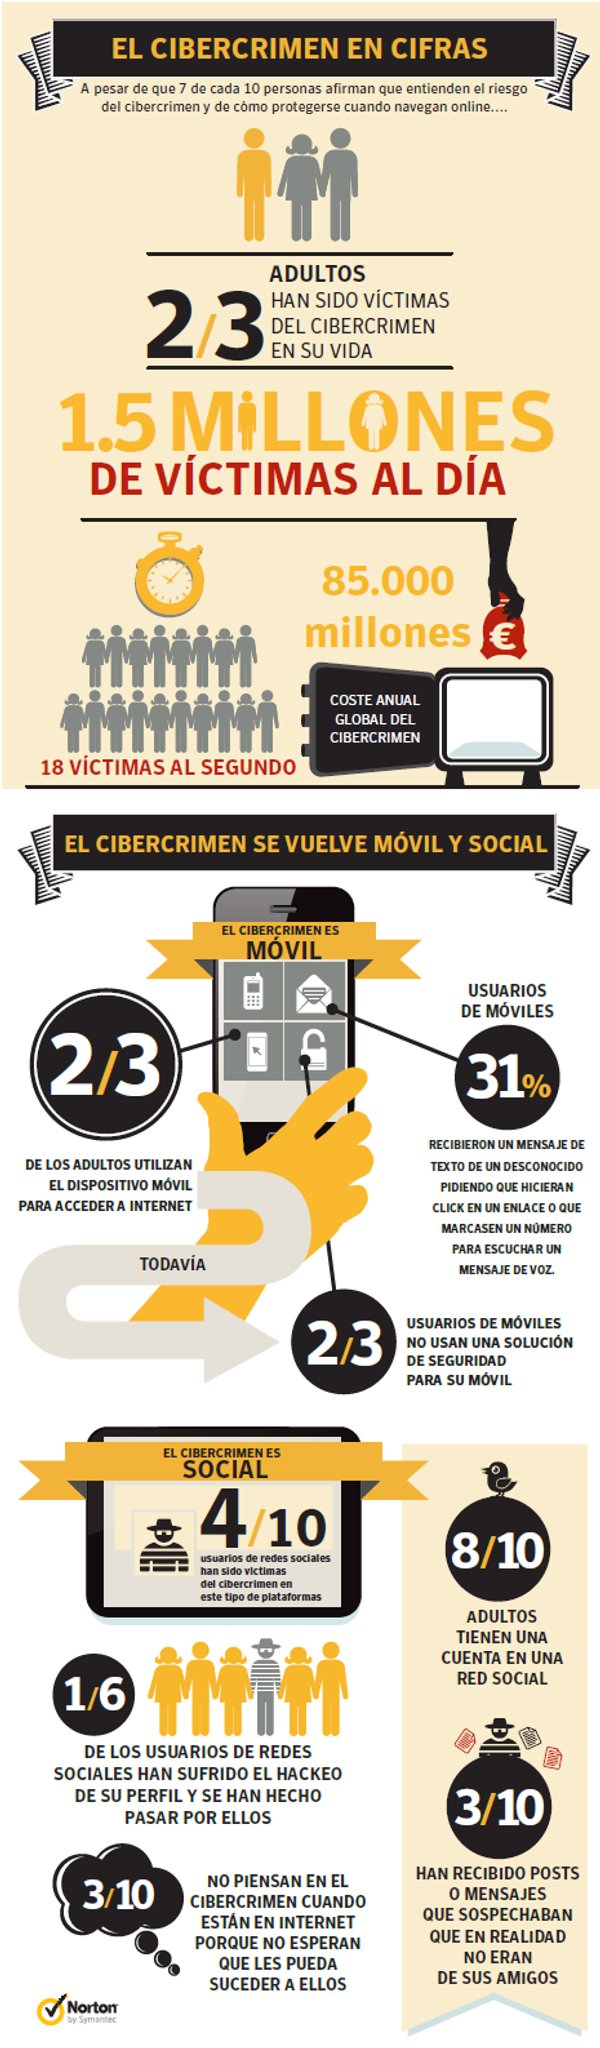 Infografia Norton Cibercrimen 2012